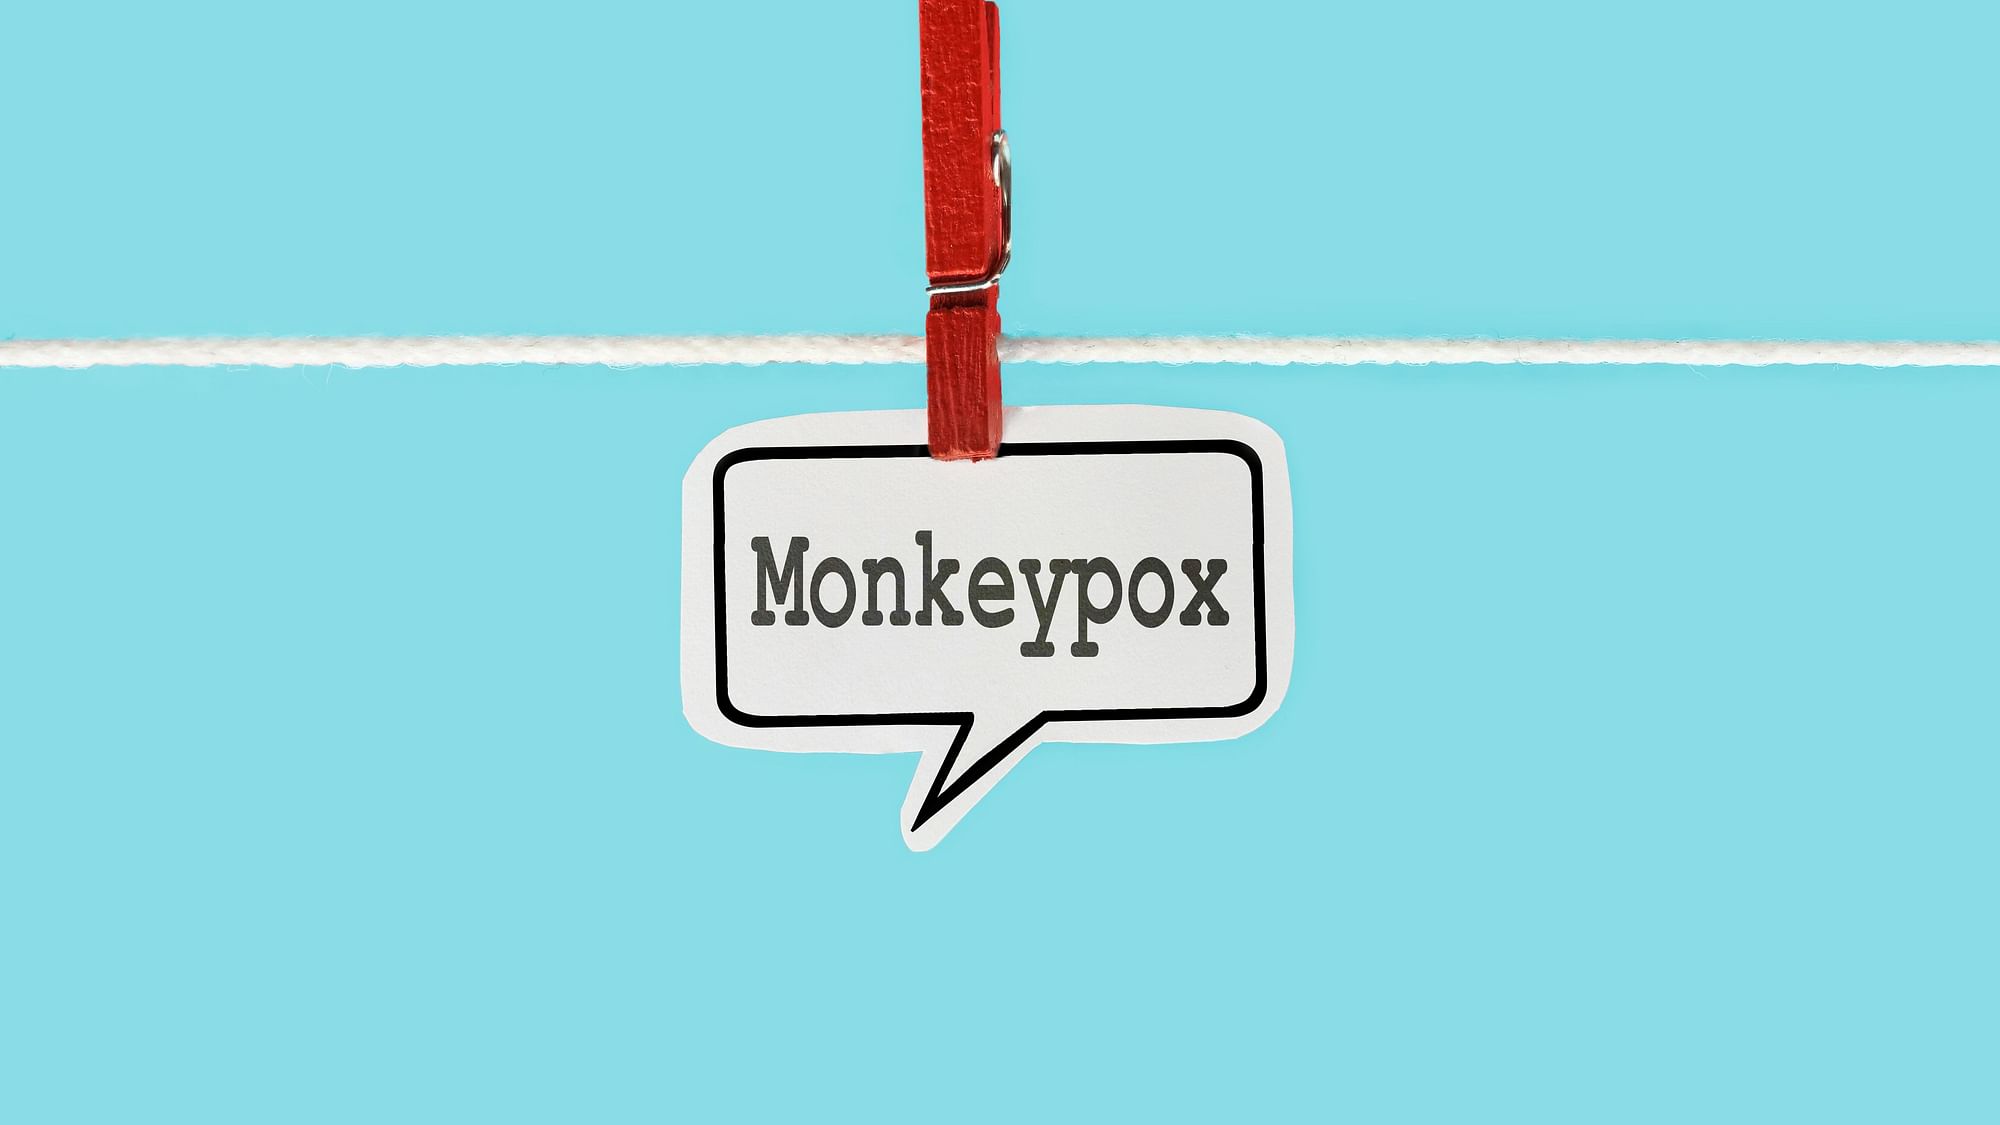 <div class="paragraphs"><p>Monkeypox In US: अमेरिकी सरकार ने&nbsp;मंकीपॉक्स को नेशनल हेल्थ इमरजेंसी घोषित किया</p></div>